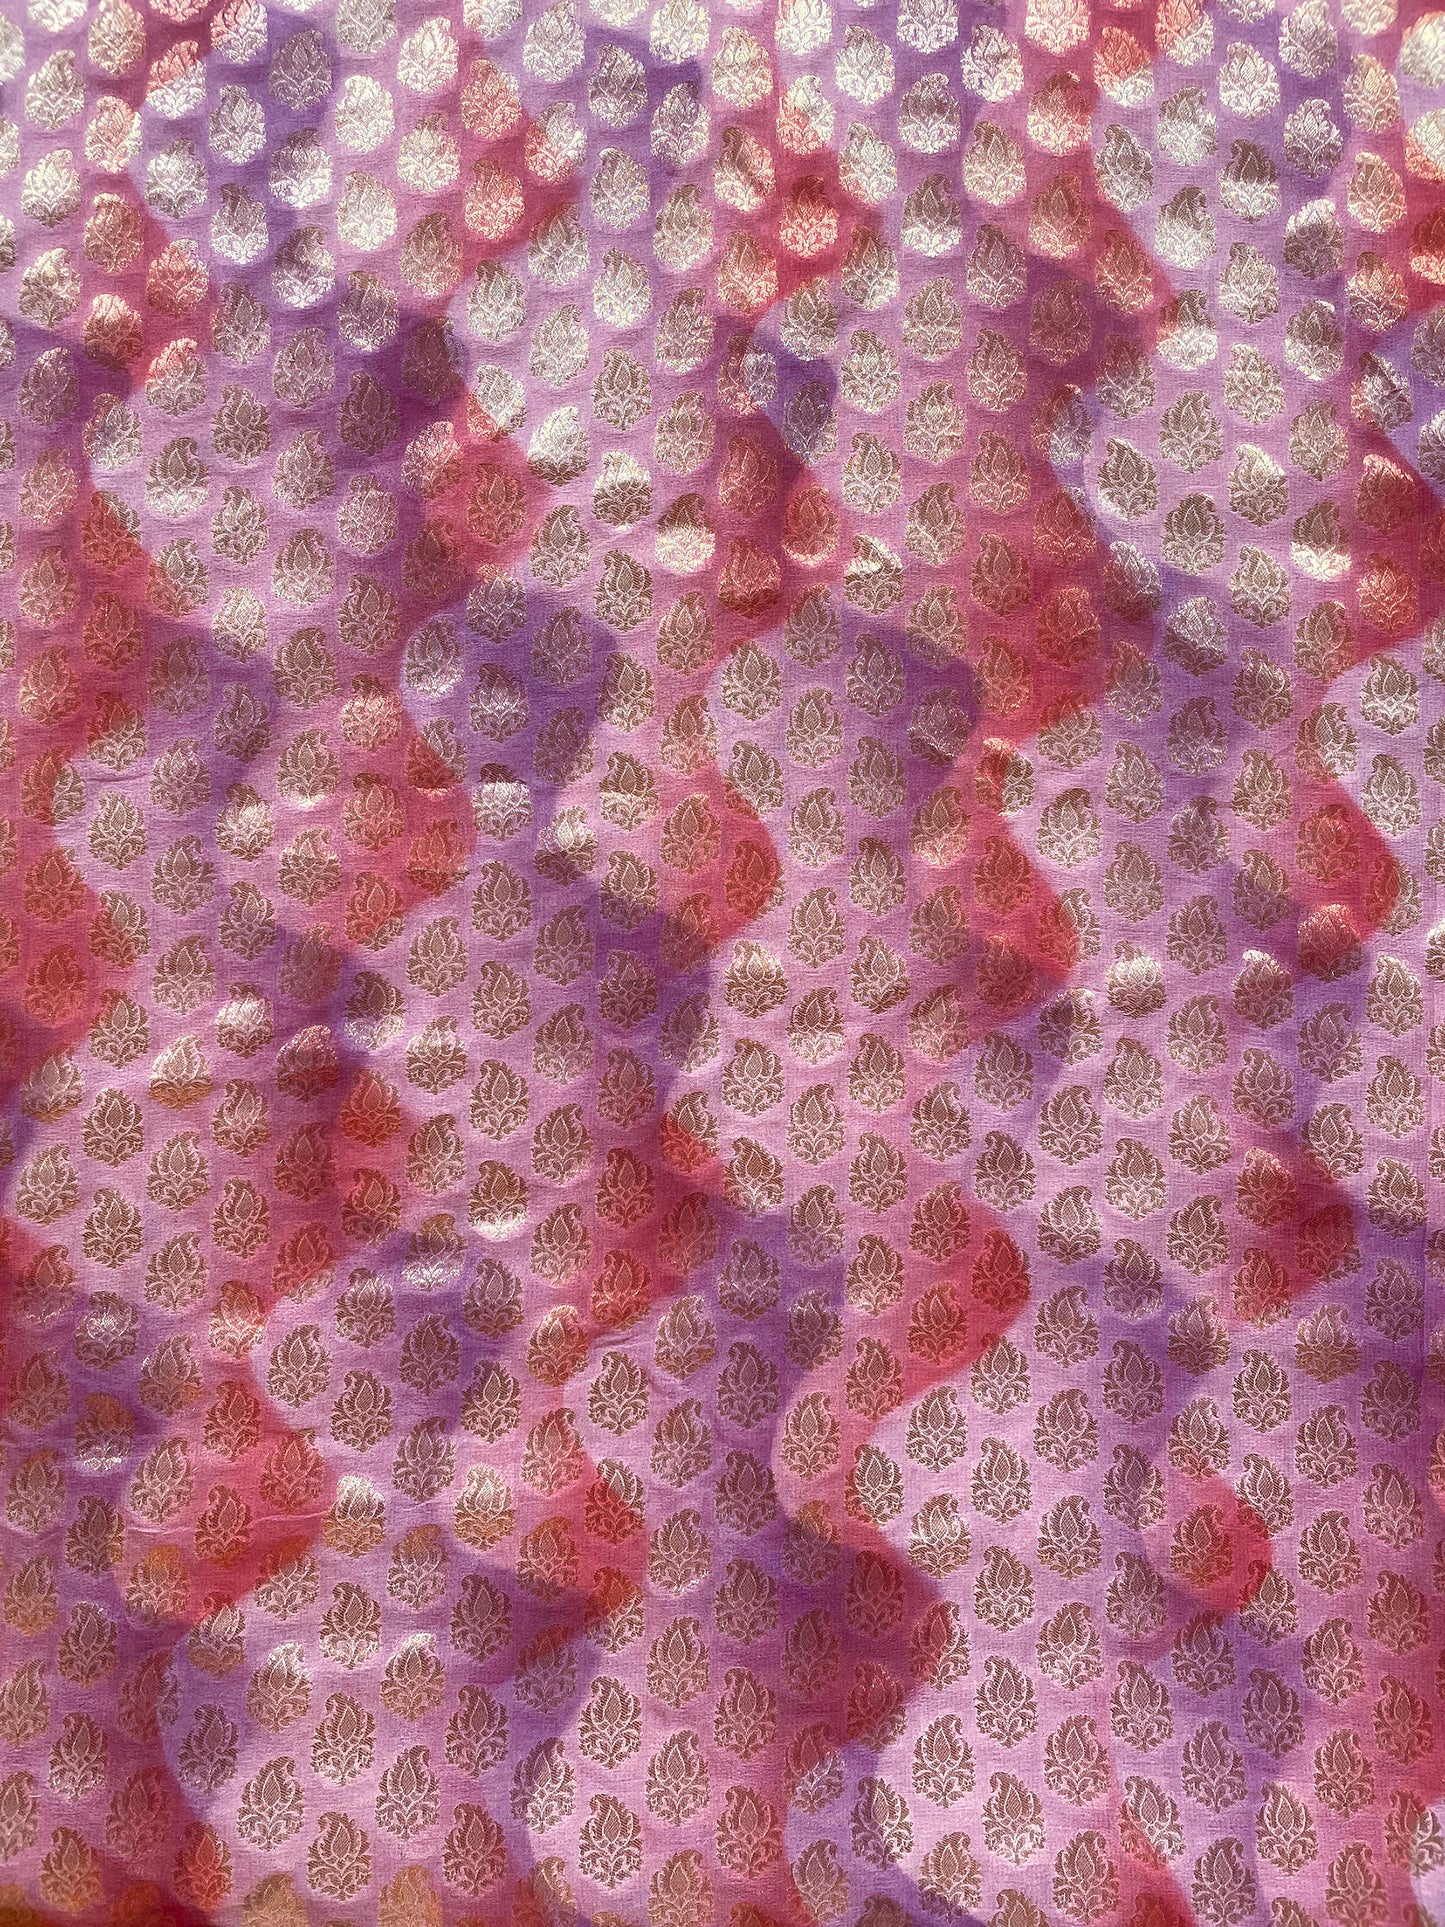 Handloom Khaddi Shibori Fabric